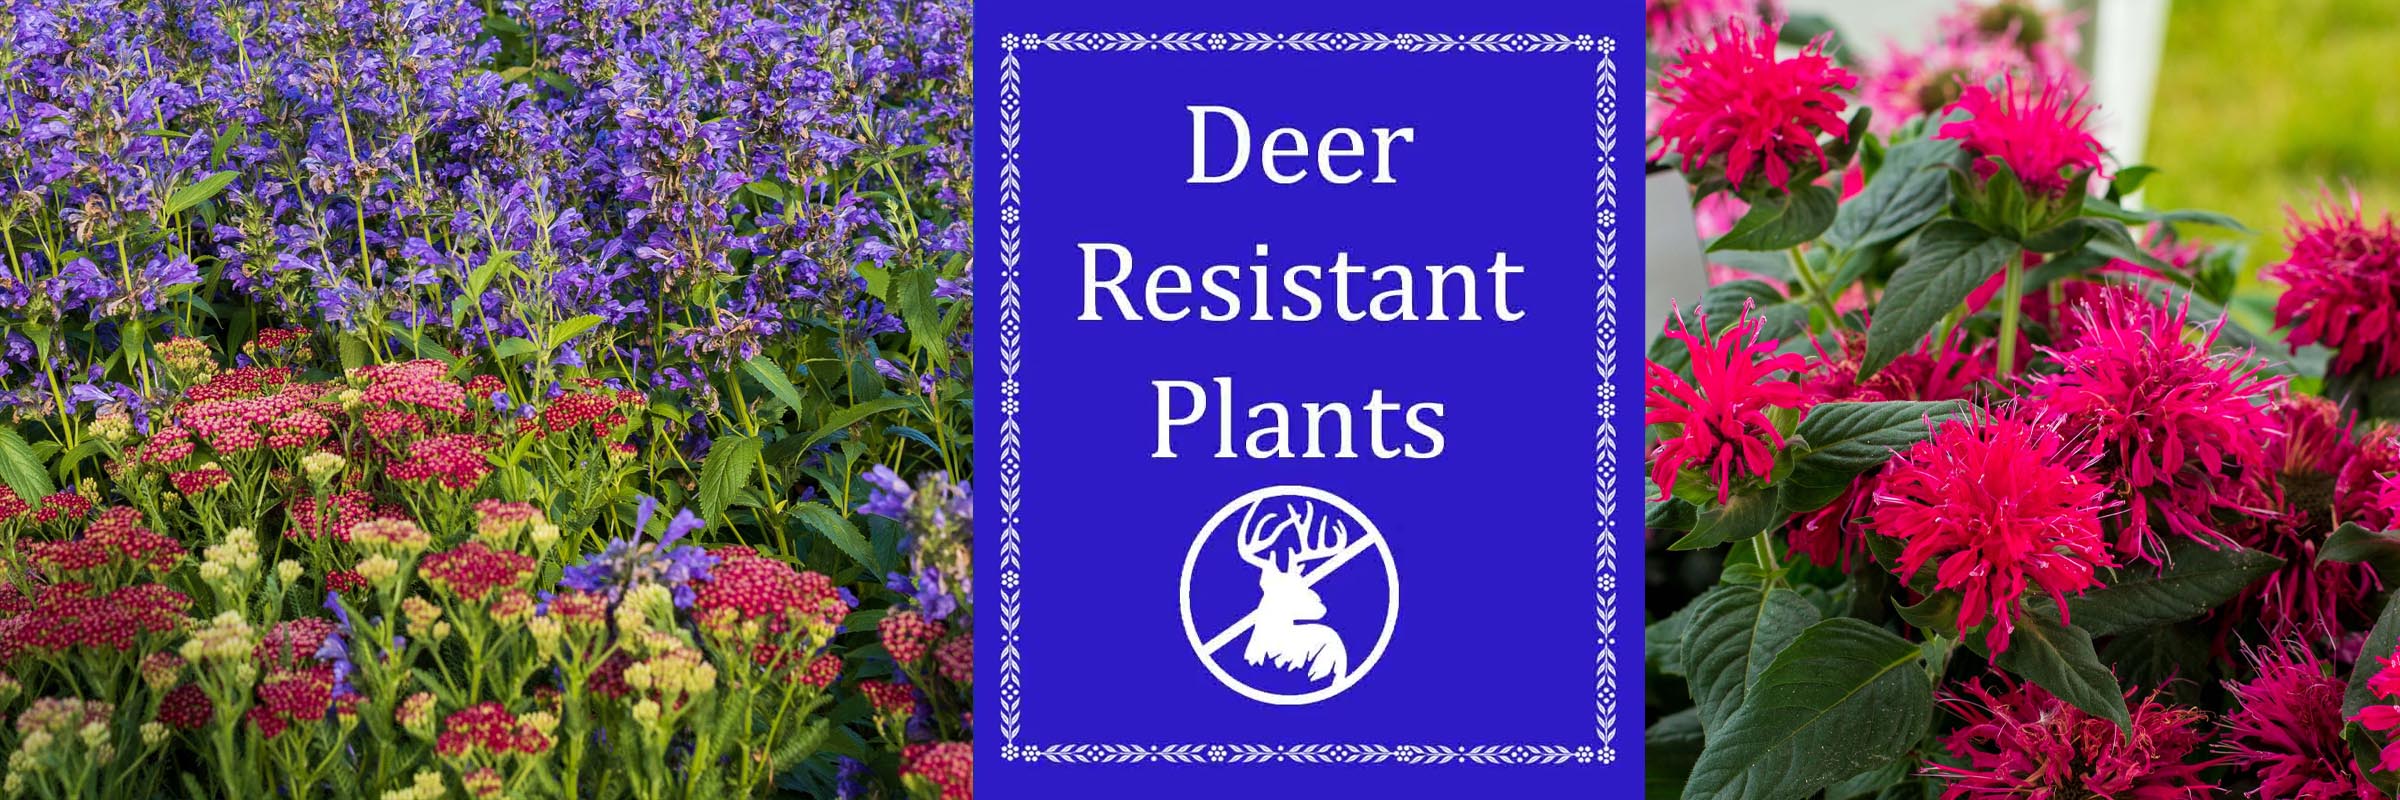 Deer Resistant Plants Sugar Creek Gardens